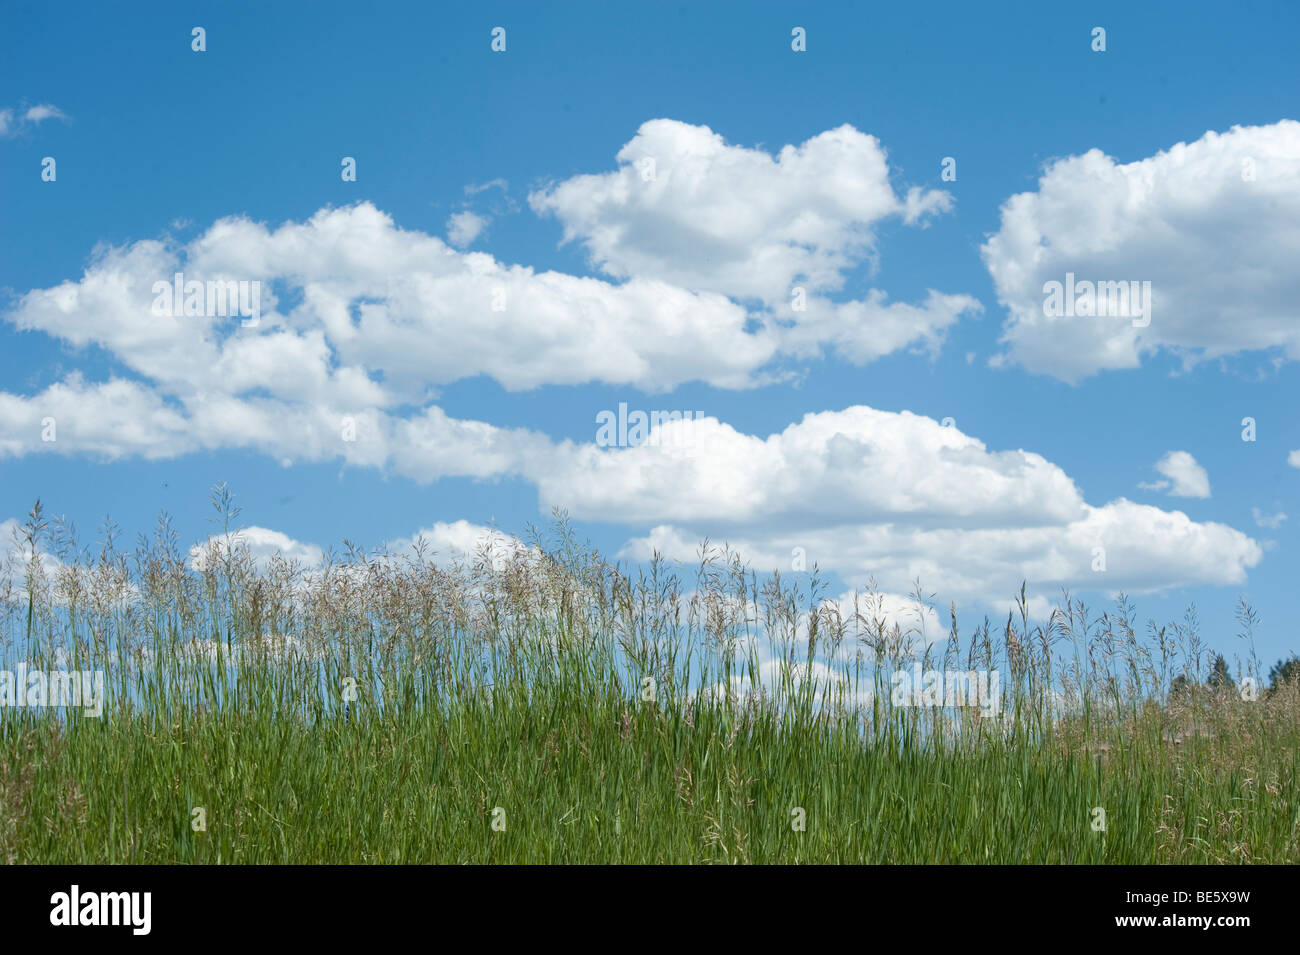 Las nubes cúmulos en el cielo azul claro con hierba en primer plano Foto de stock